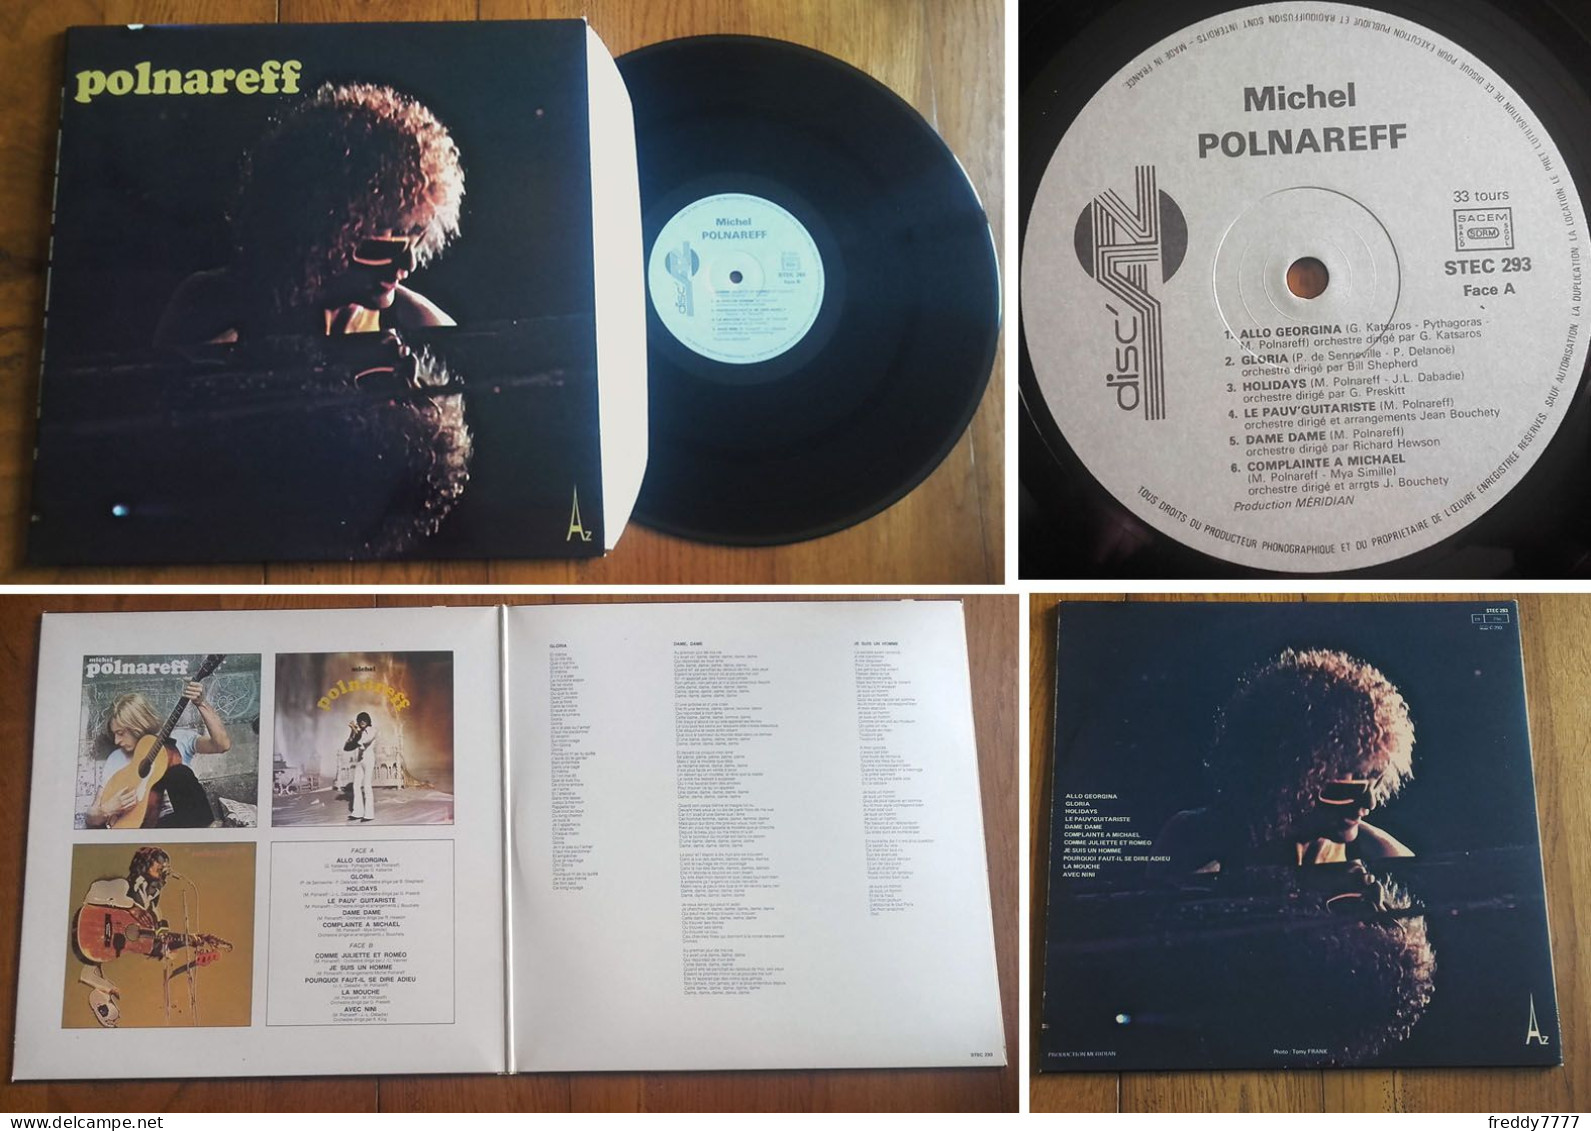 RARE French LP 33t RPM (12") MICHEL POLNAREFF «Volume 4» (Gatefold P/s, 1979) - Collectors